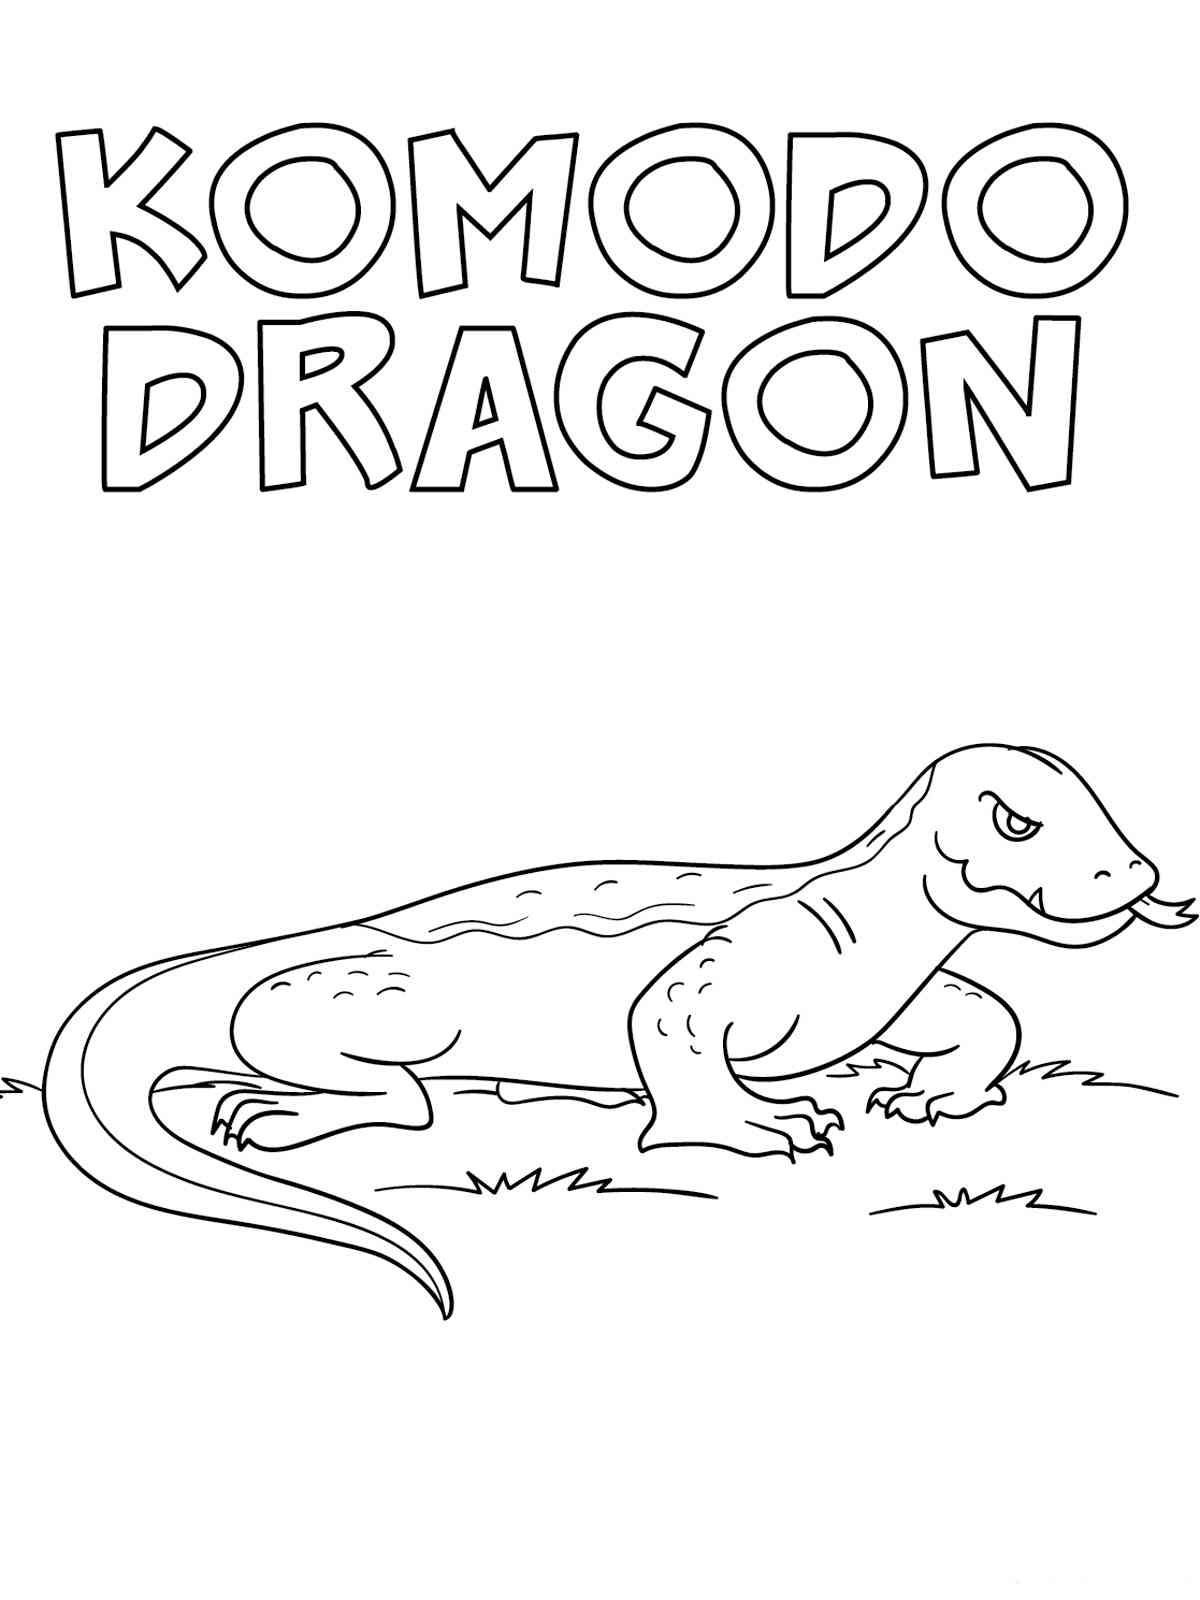 Cute Komodo Dragon coloring page